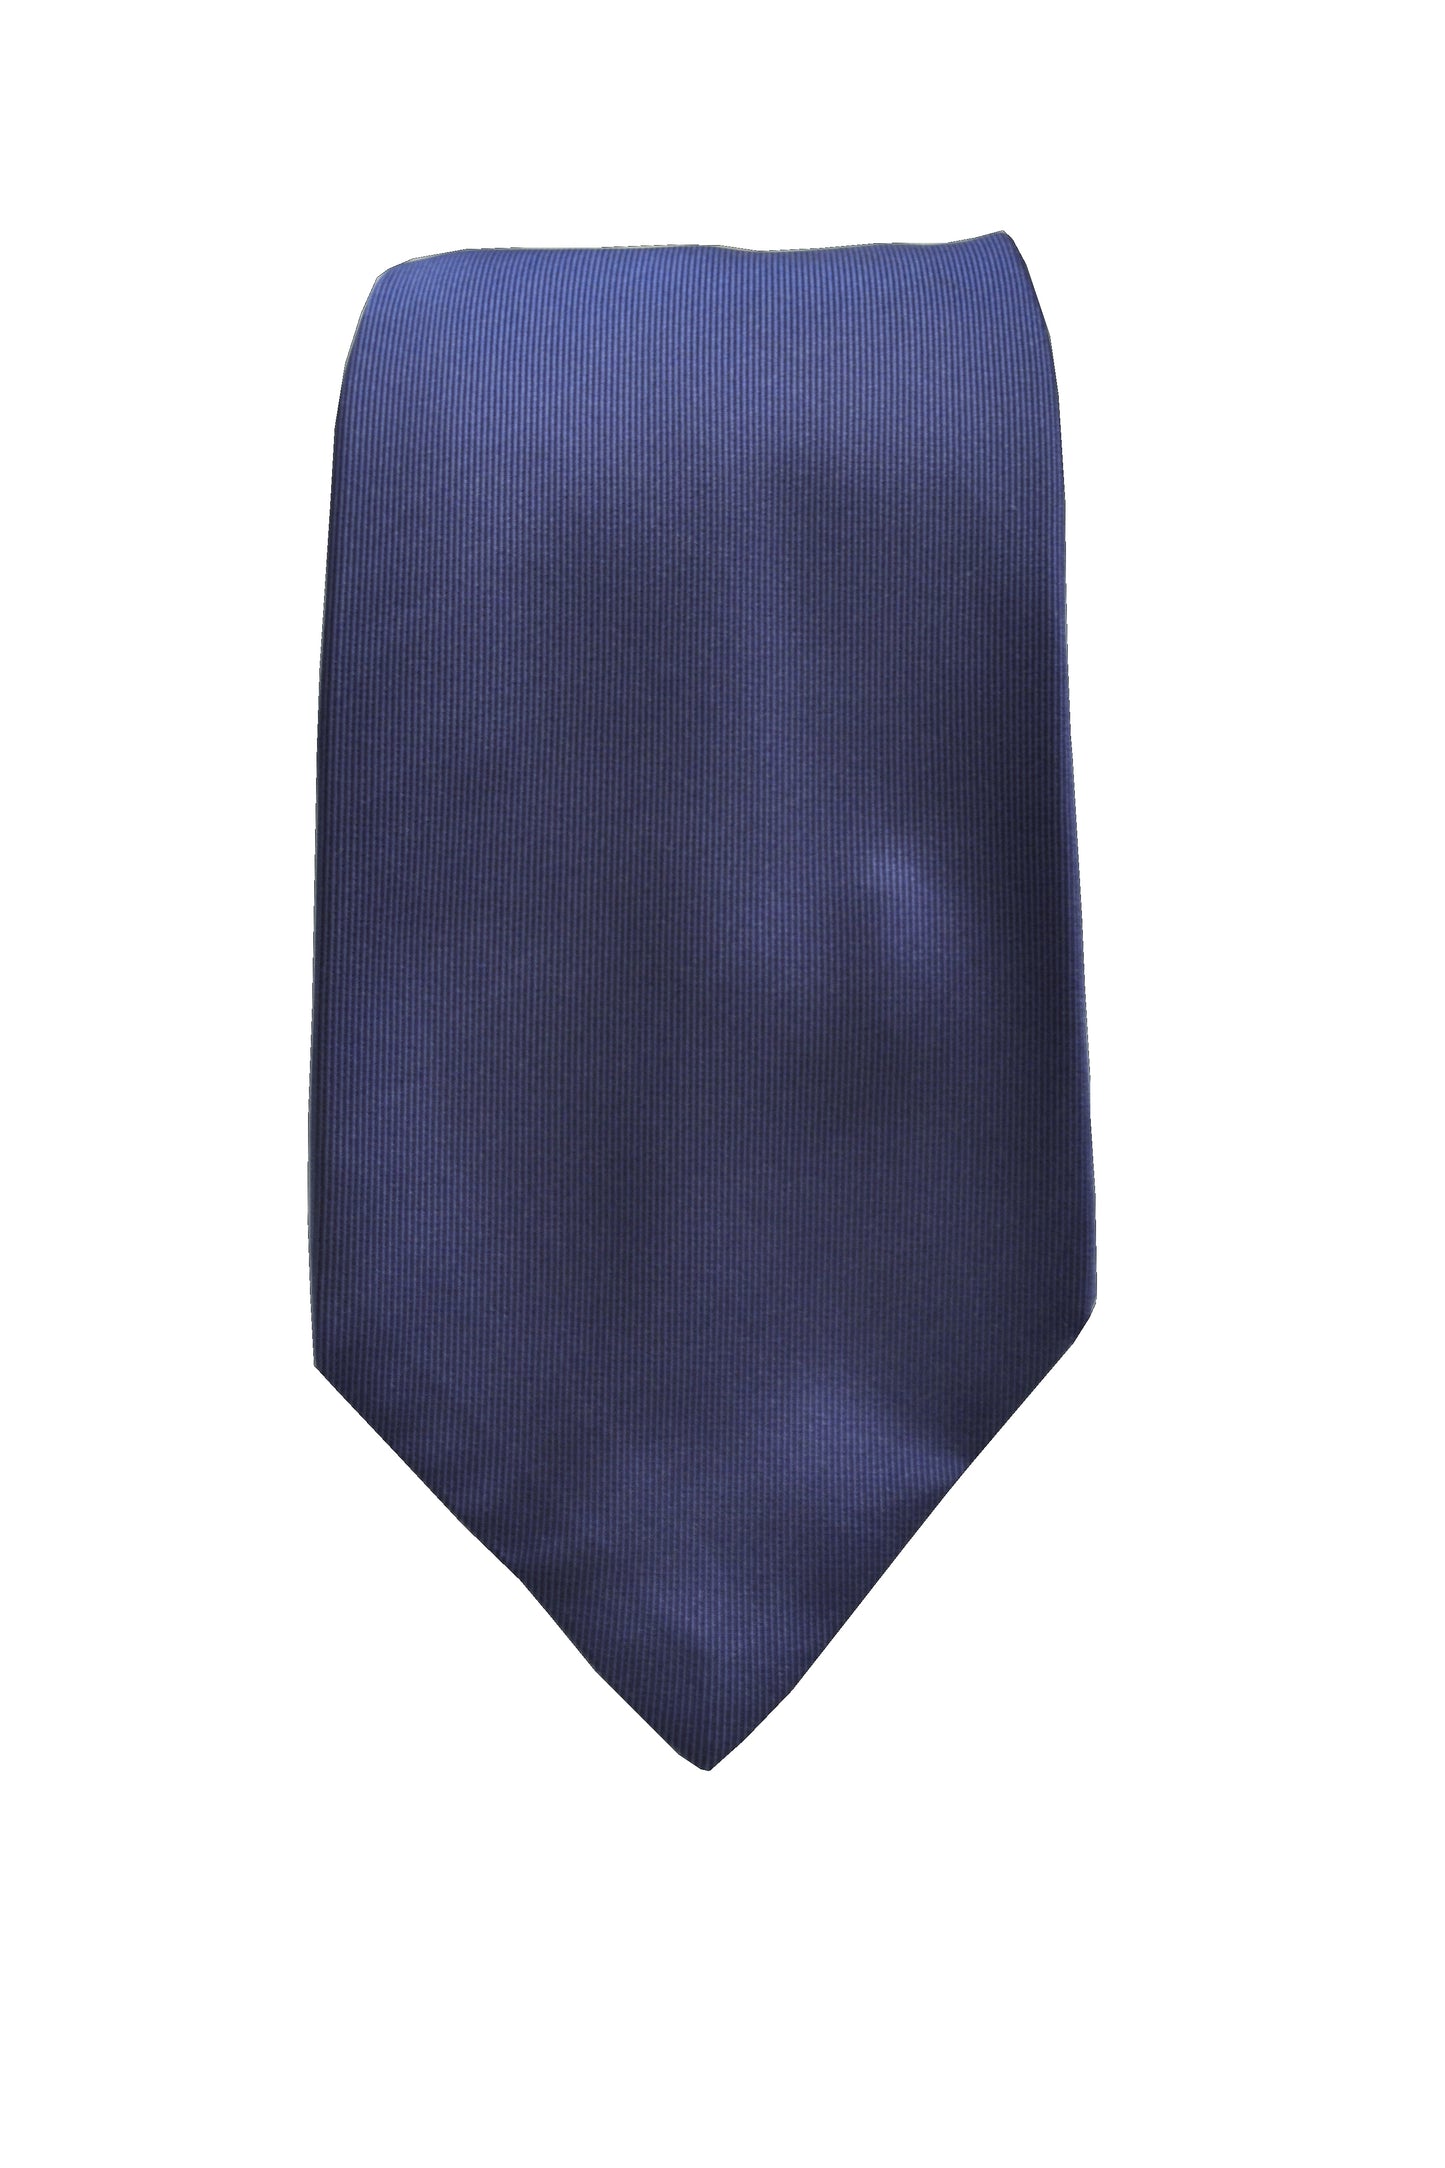 Cravatta 3 pieghe Blu Brillante in Raso di Seta con il portafortuna ricamato, nascosto